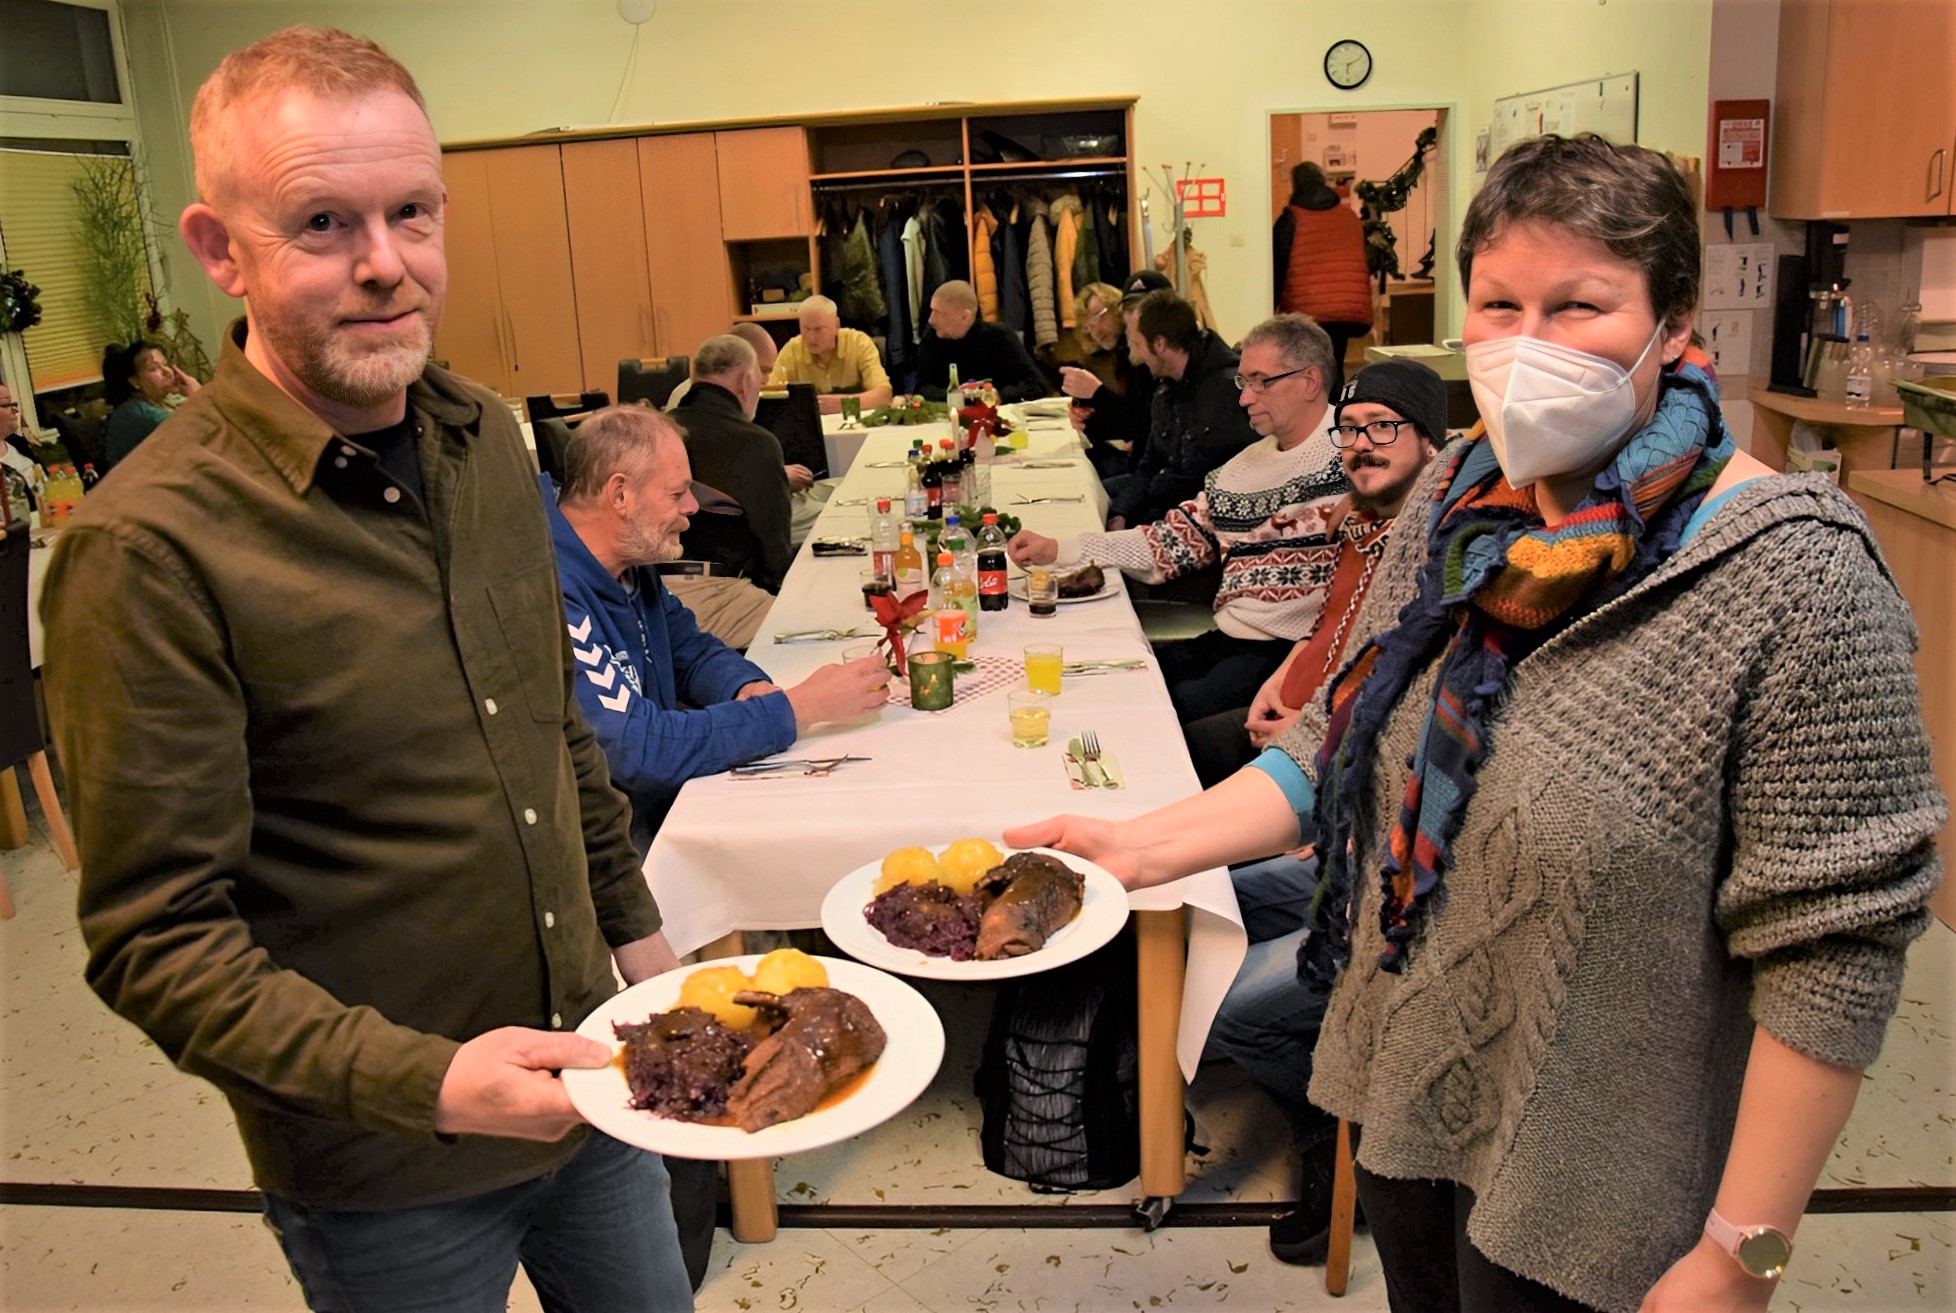 Die Sozialarbeiter Thomas Dewald und Julia Durchdenwald freuen sich über das Festtagsessen für die Obdachlosen. Foto: Kreiszeitung Wesermarsch